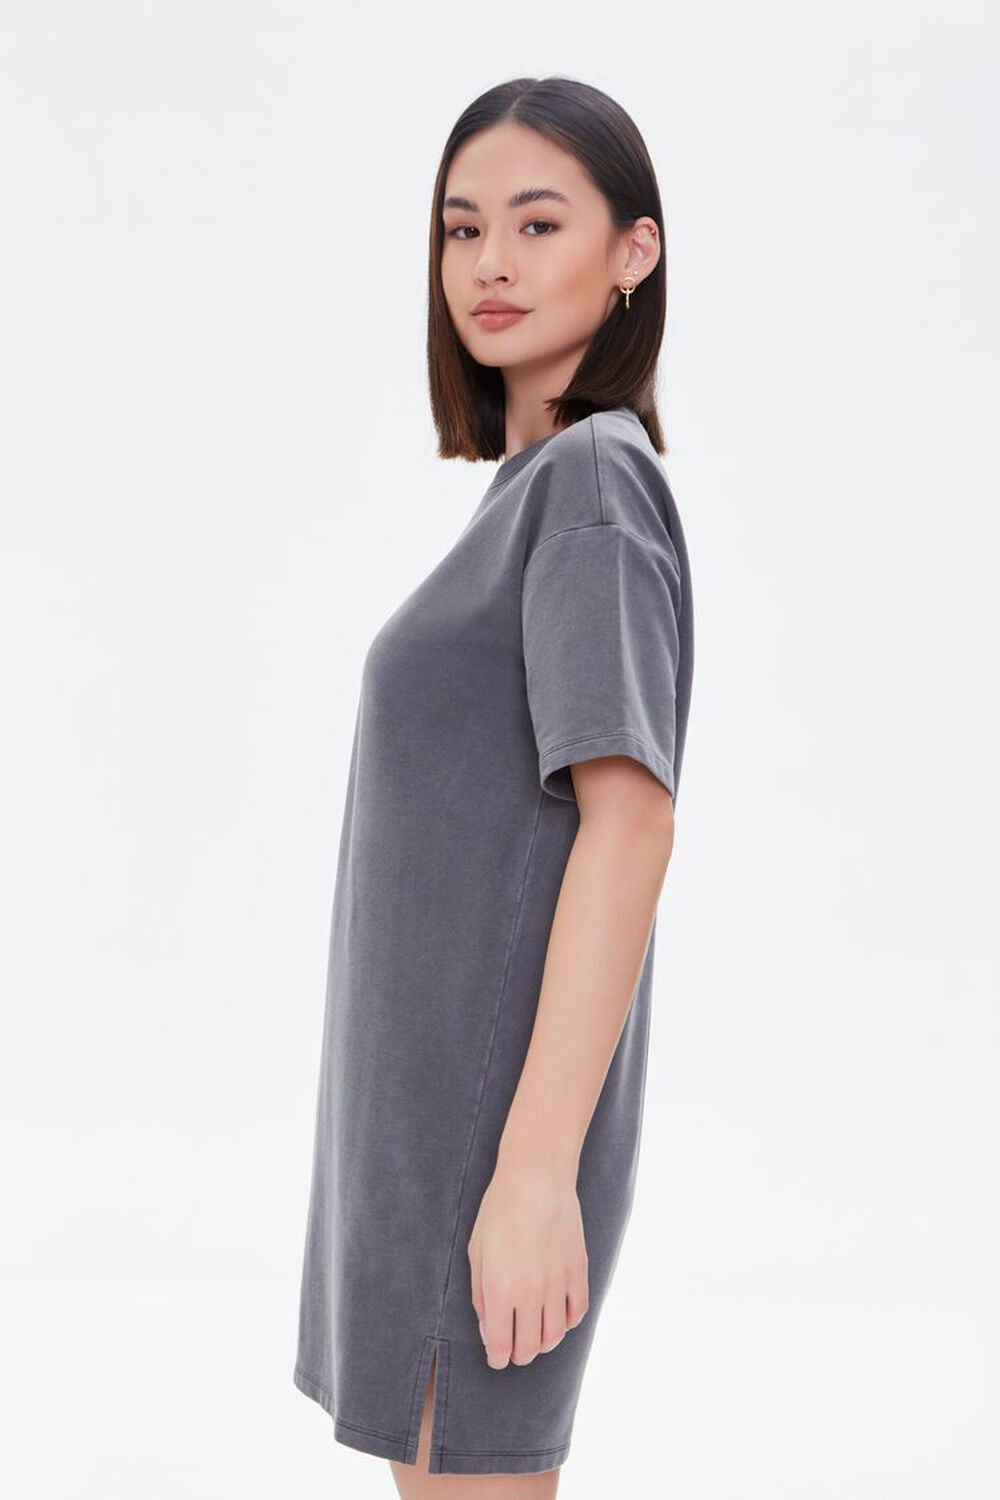 GREY Mineral Wash T-Shirt Dress, image 2